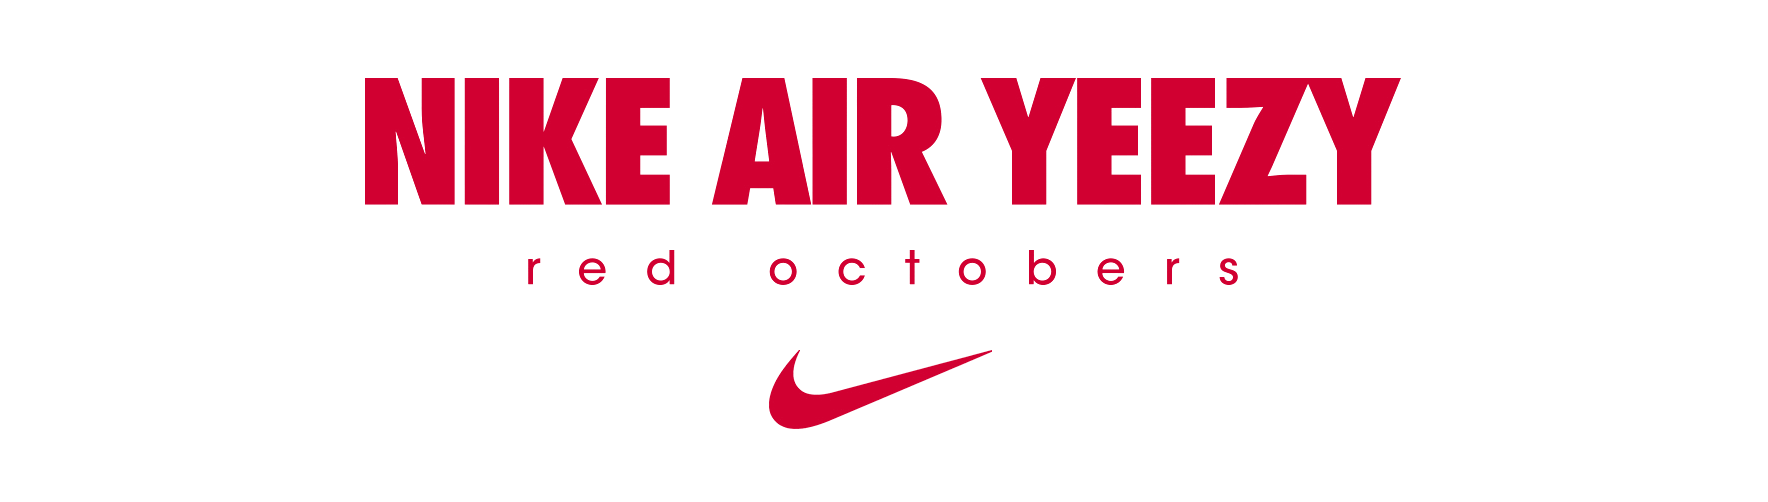 Nike Yeezy Logo - LeRoi3 / Digital Artist - NIKE AIR YEEZY II X RED OCTOBERS